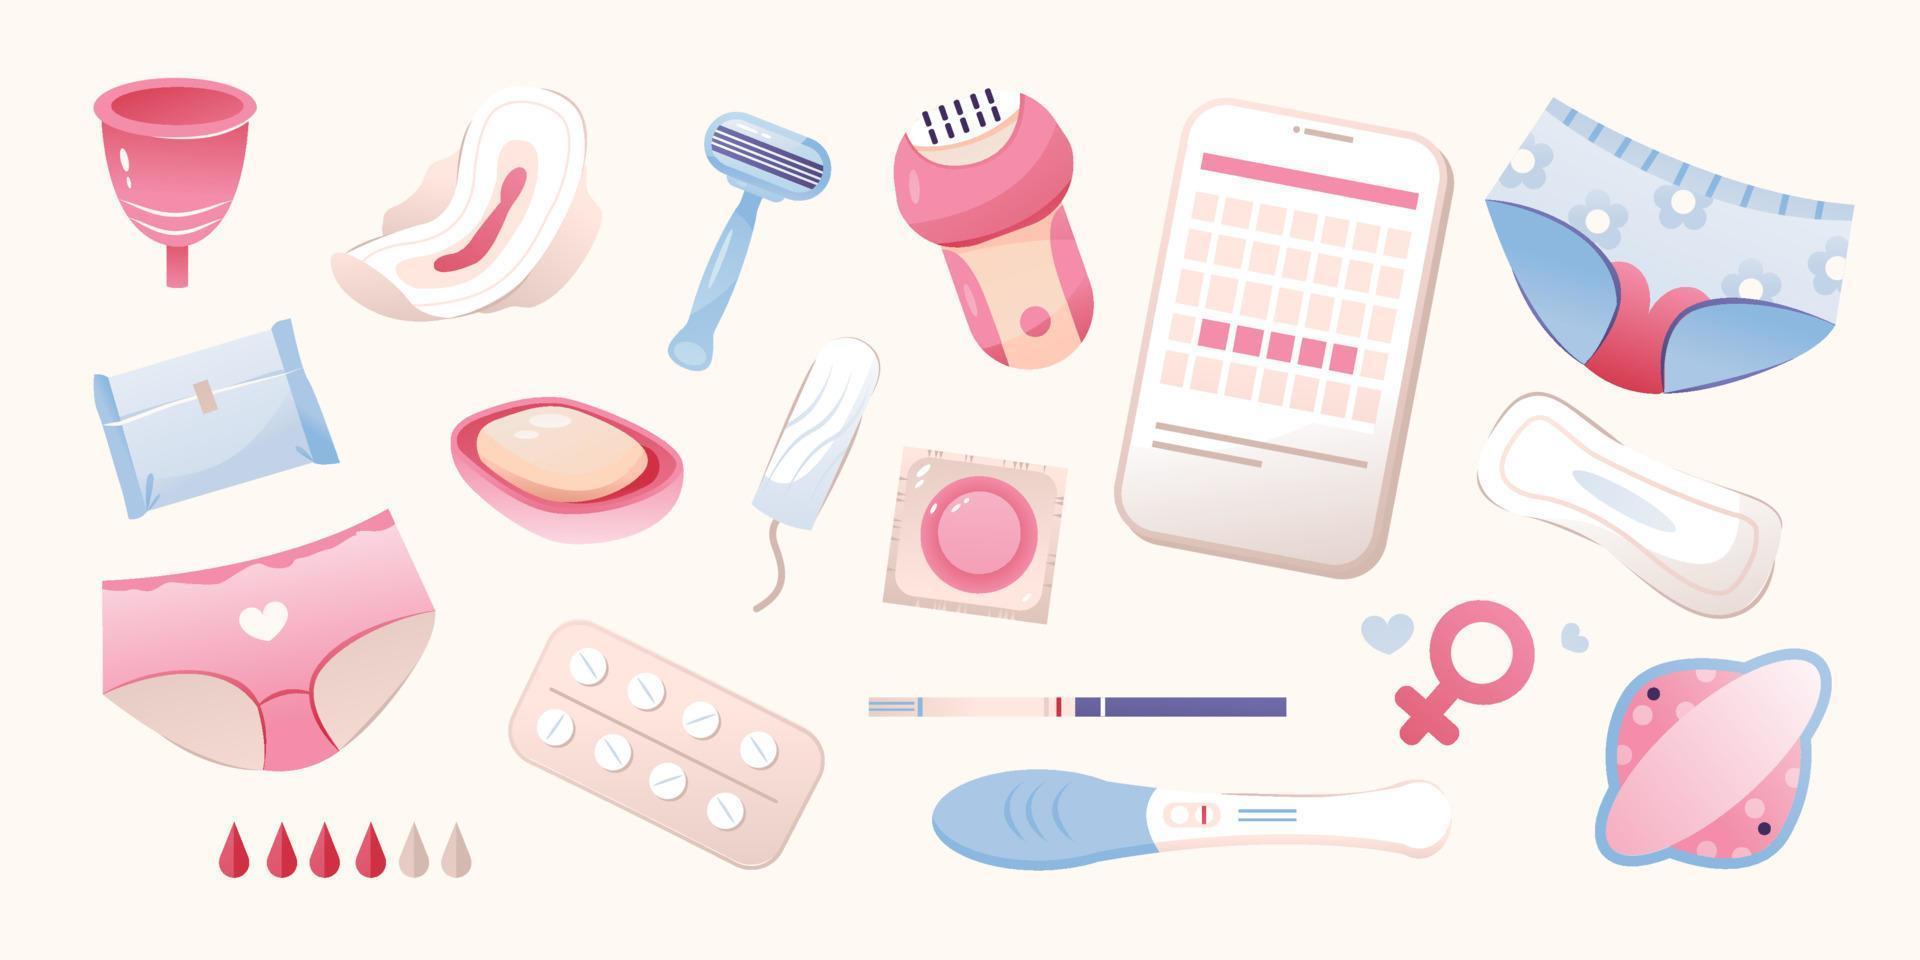 vrouwelijk hygiëne producten set, menstruatie- beker, tampon, kussen, zwangerschap testen, condoom. menstruatie- fiets. vrouwen Gezondheid. vector illustratie